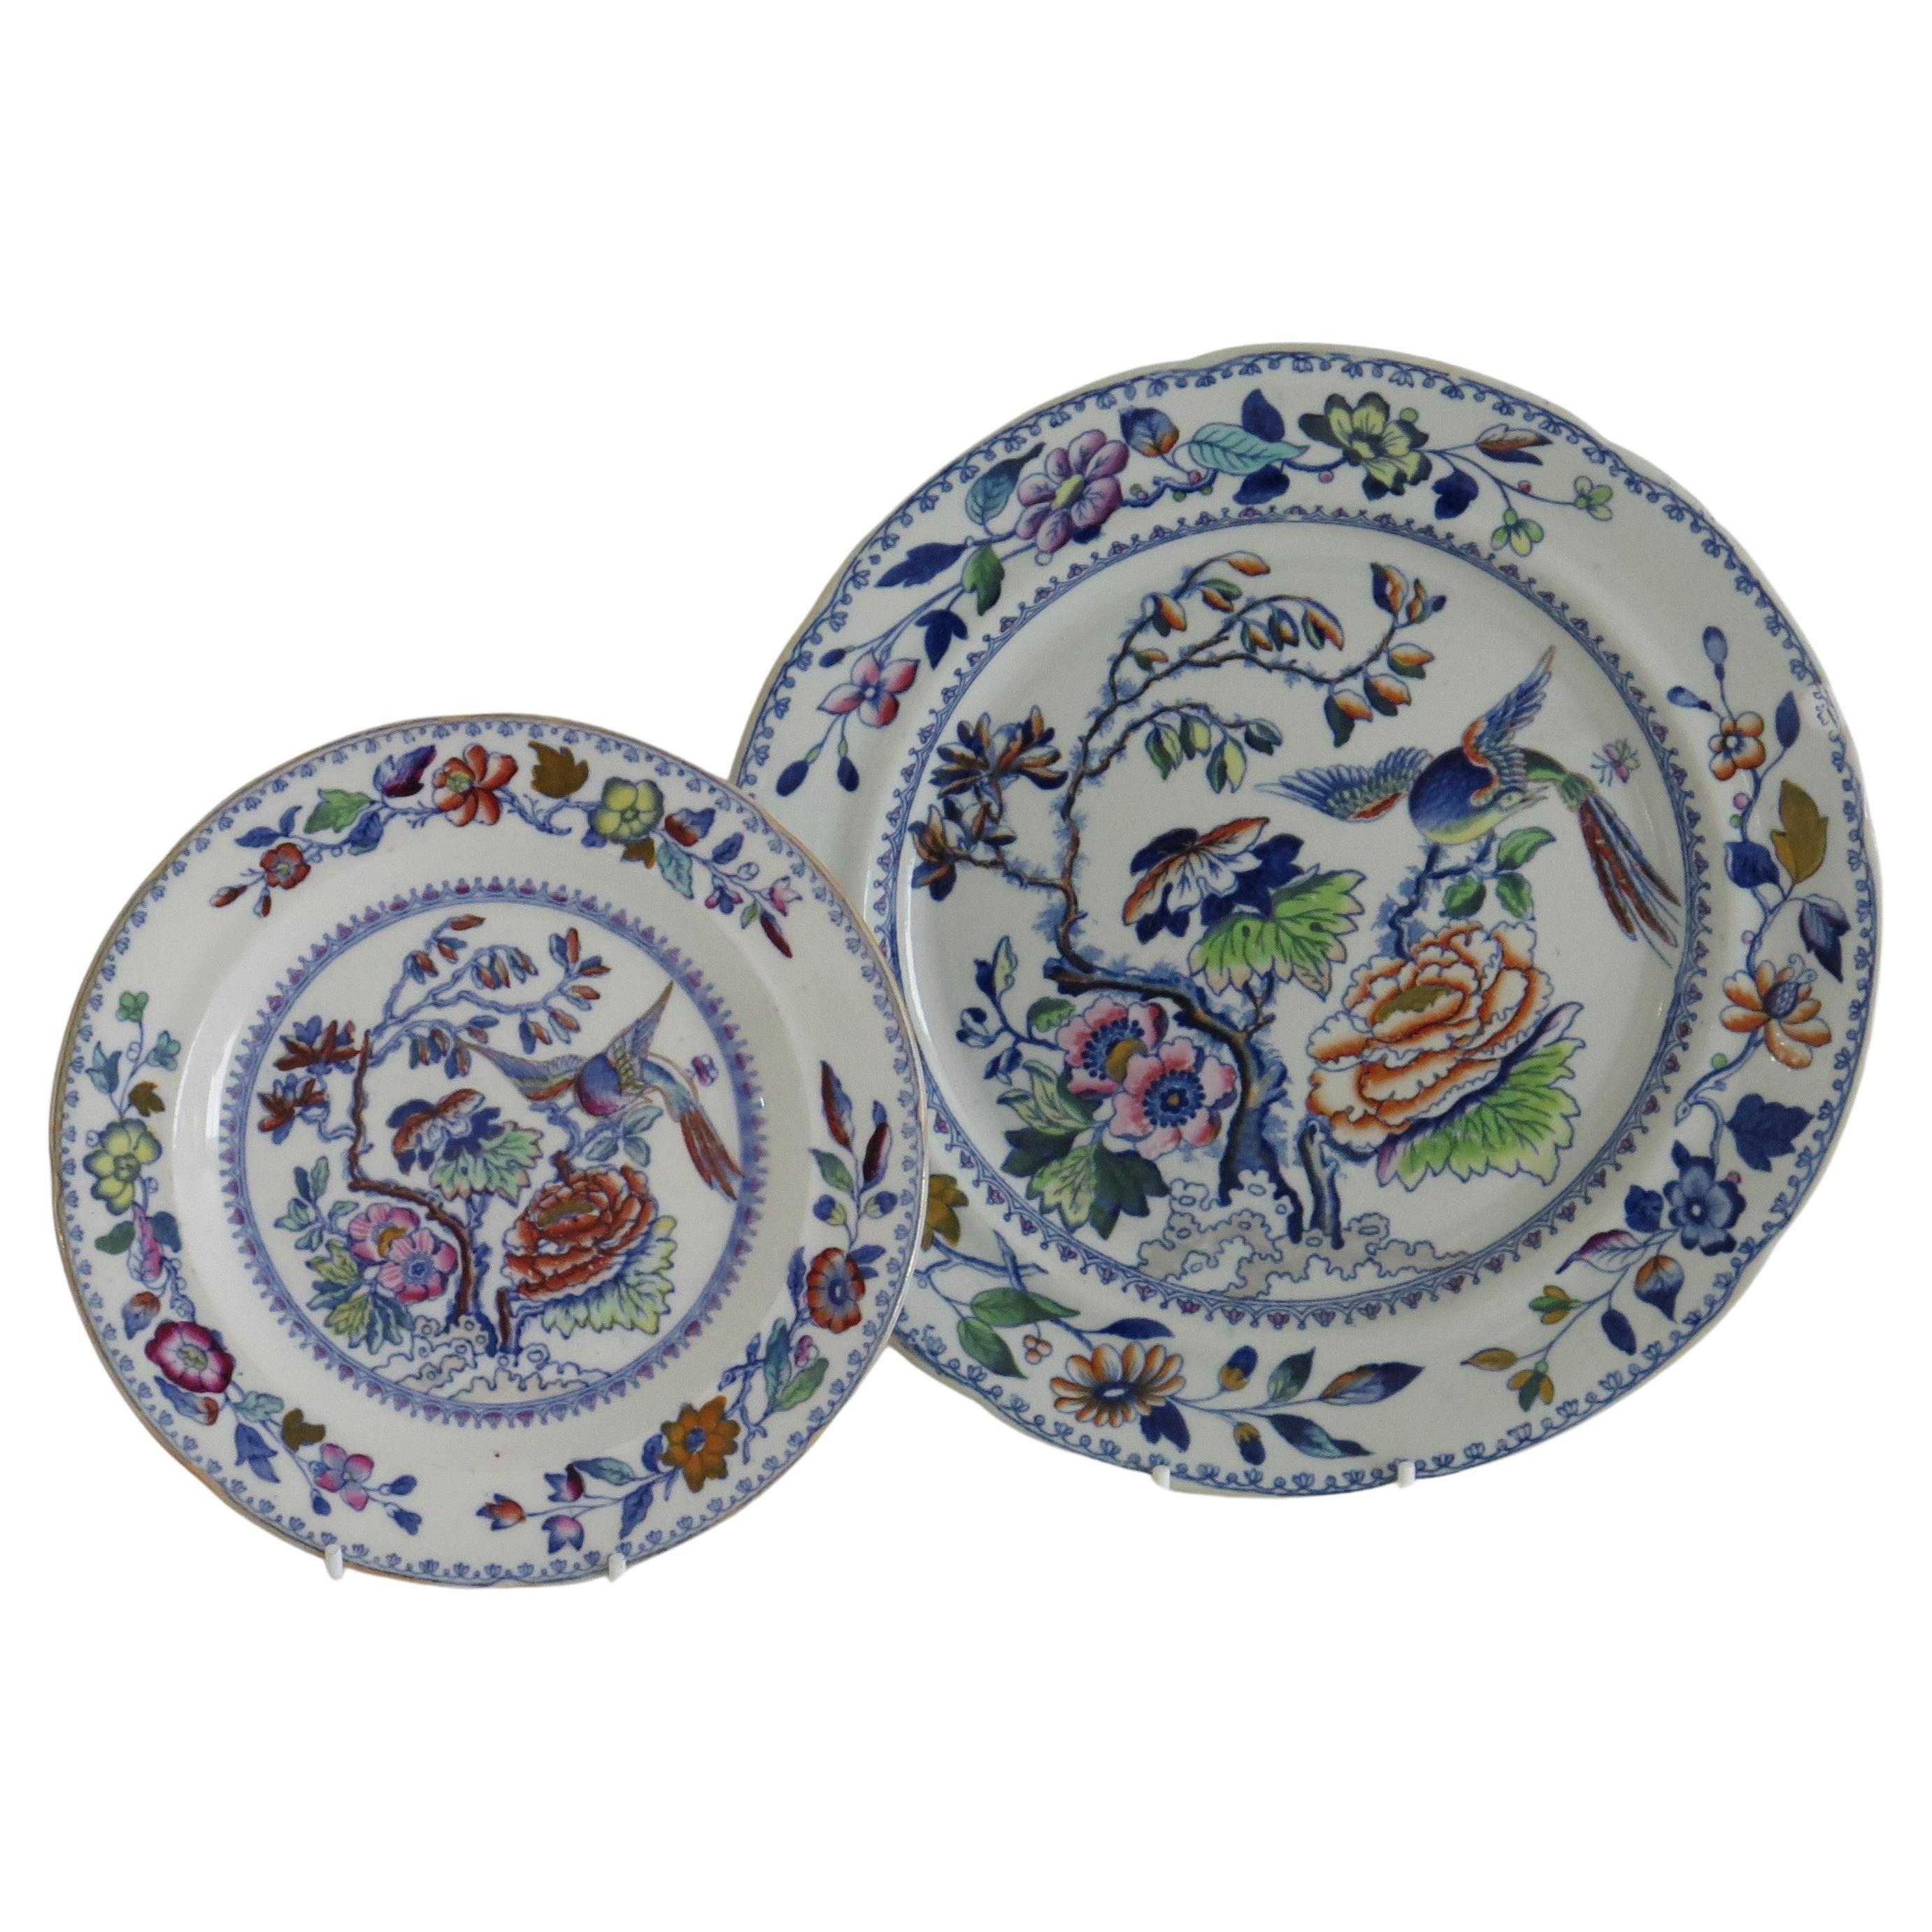 Il s'agit de deux assiettes anglaises en pierre de fer ; une assiette à dîner de Davenport et une assiette à dessert de Mason's, toutes deux dans le motif doré de l'oiseau volant.

Les deux assiettes sont bien remplies et peintes à la main,